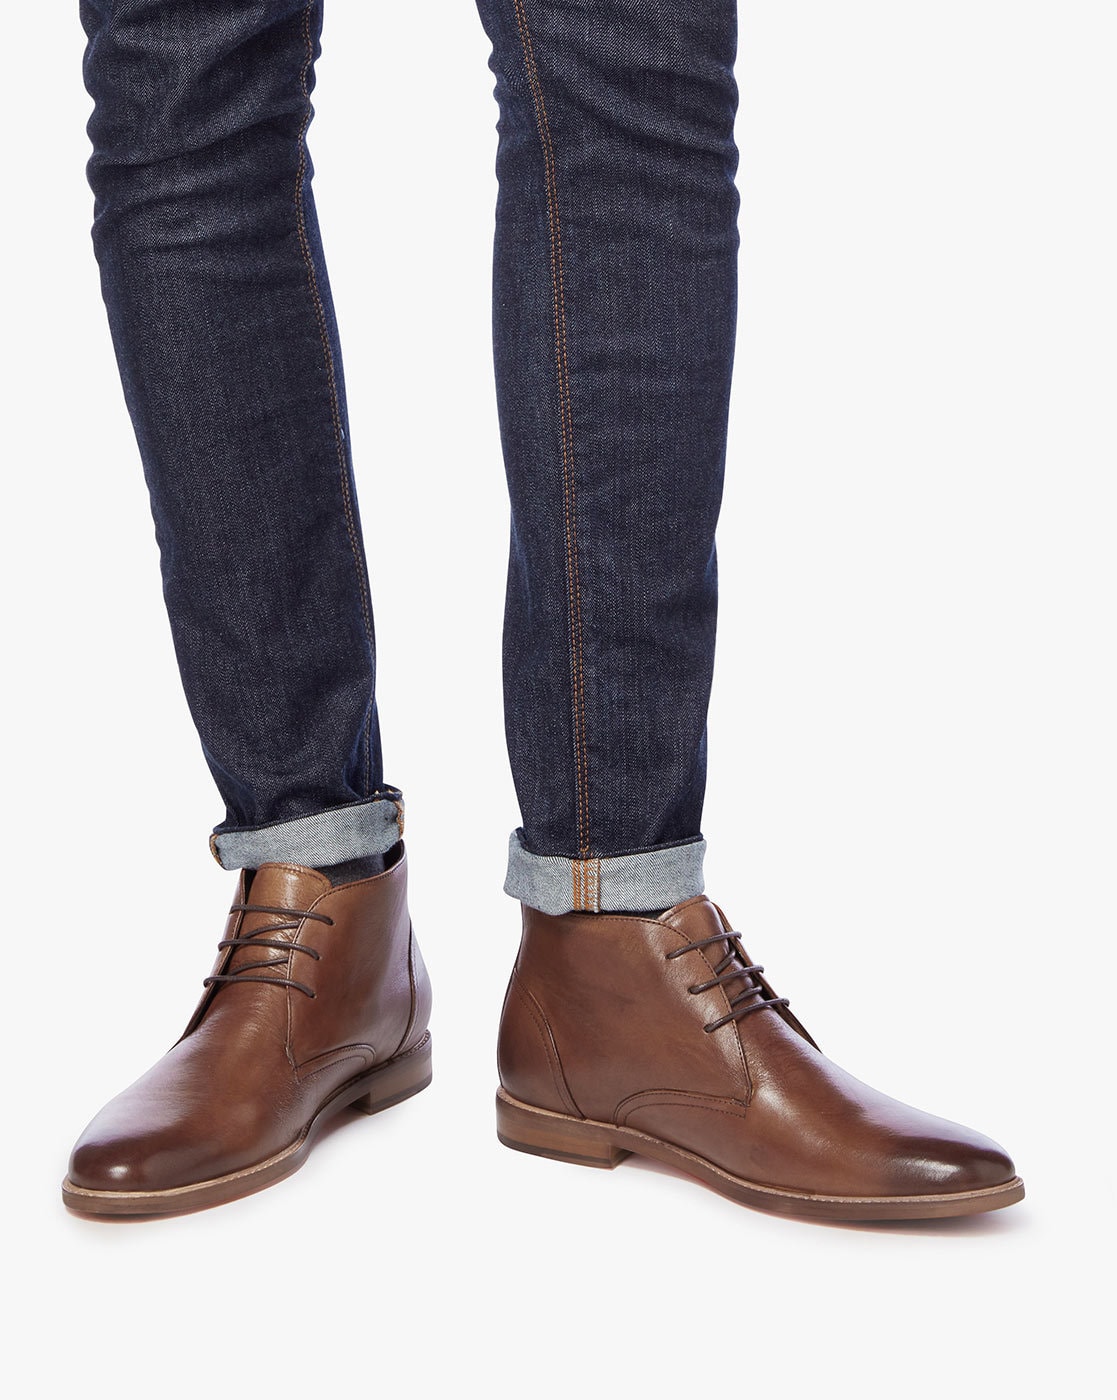 Vegetatie Tweet patroon Buy Brown Boots for Men by Dune London Online | Ajio.com